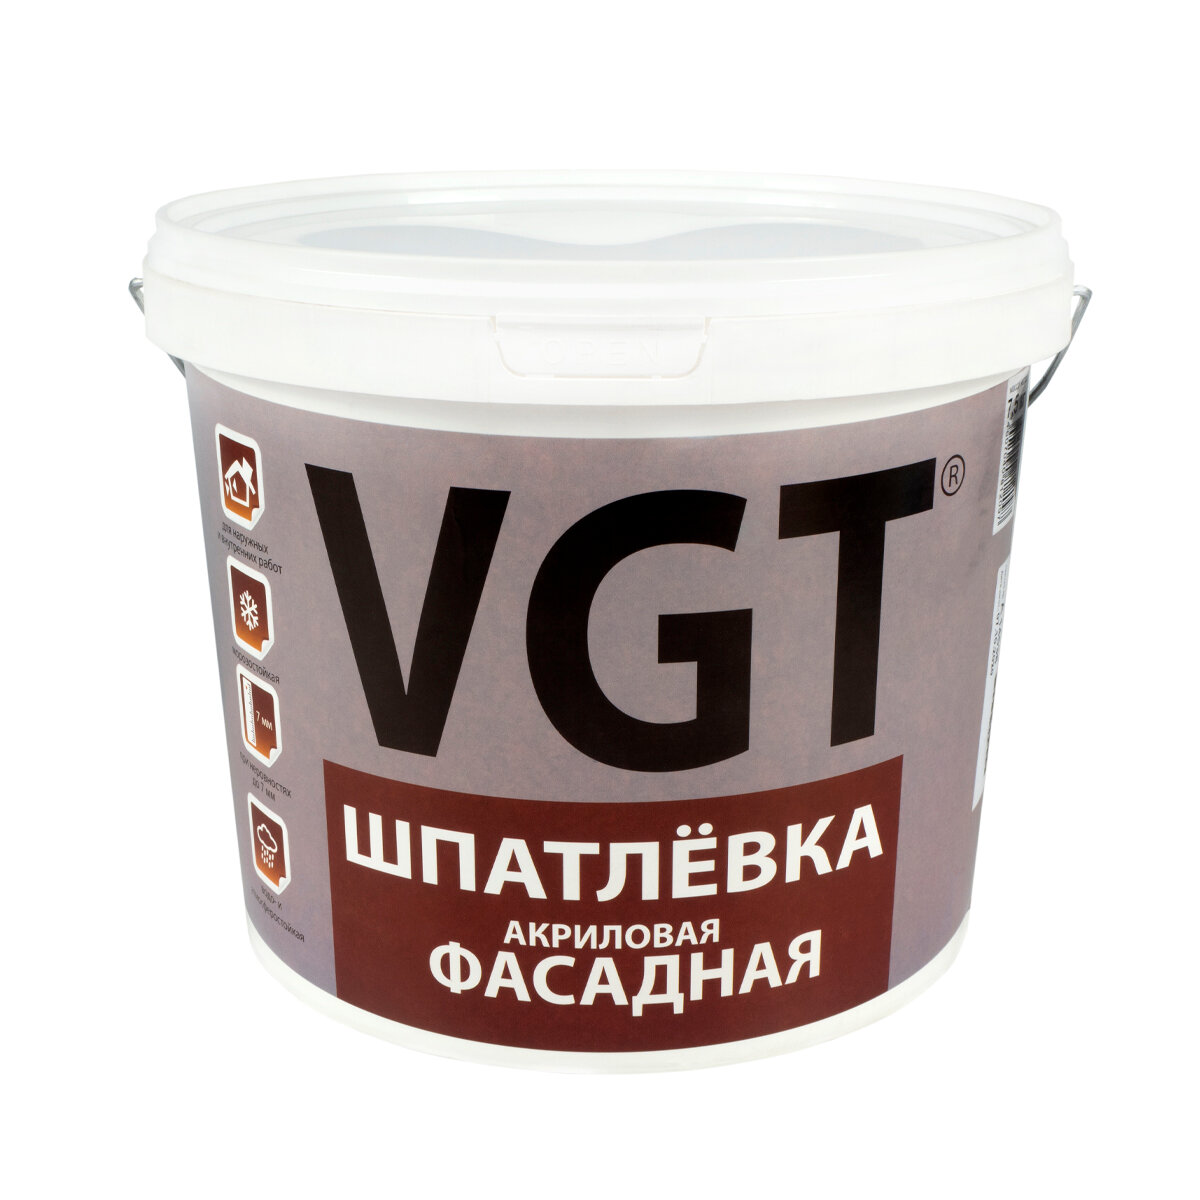 Предприятие ВГТ ООО Шпатлевка фасадная VGT, акриловая, 7,5 кг